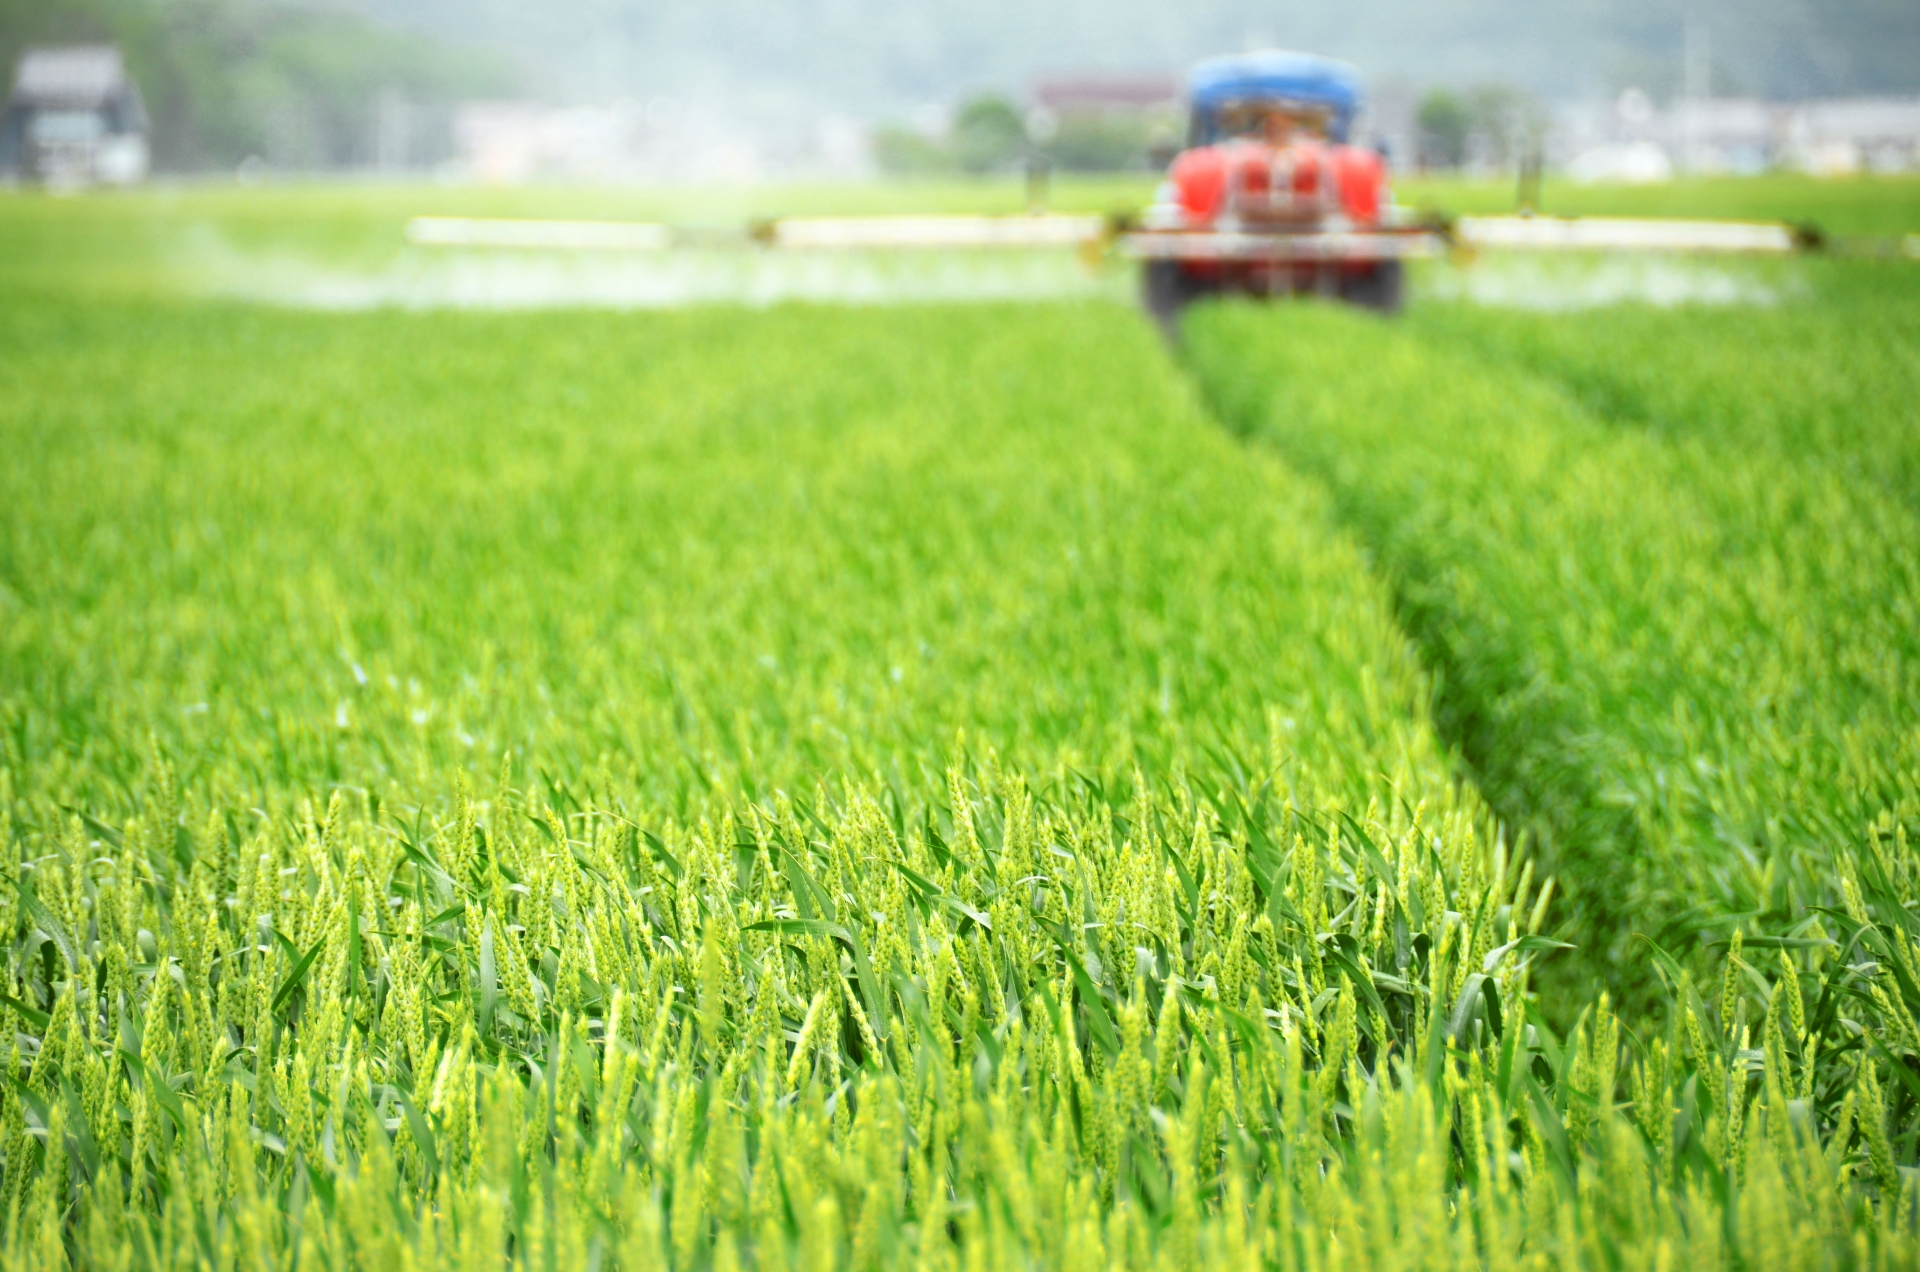 農薬散布だけではない ドローンを使った農業分野の新技術とは 株式会社旭テクノロジー Atcl ドローン事業